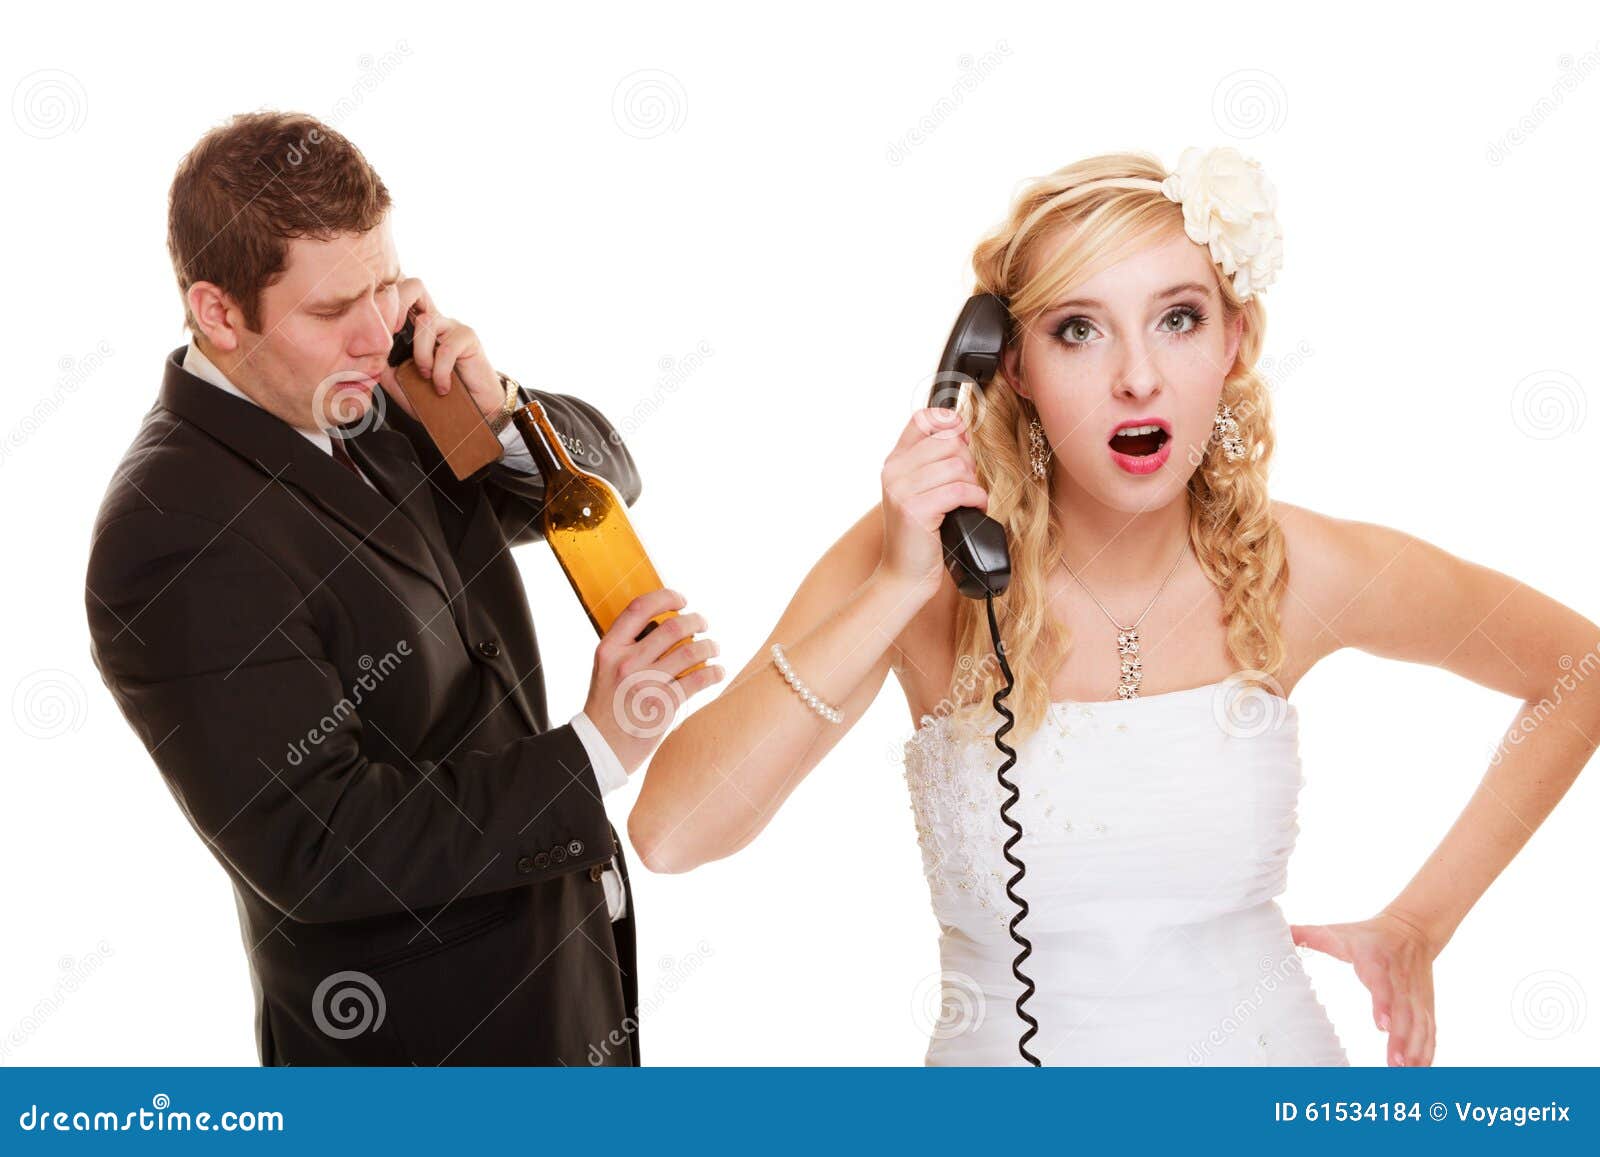 Разговоры по телефону измены мужьям. Жених с телефоном. Муж и жена разговаривают по телефону. Разговор по телефону с мужем. Жених злой.